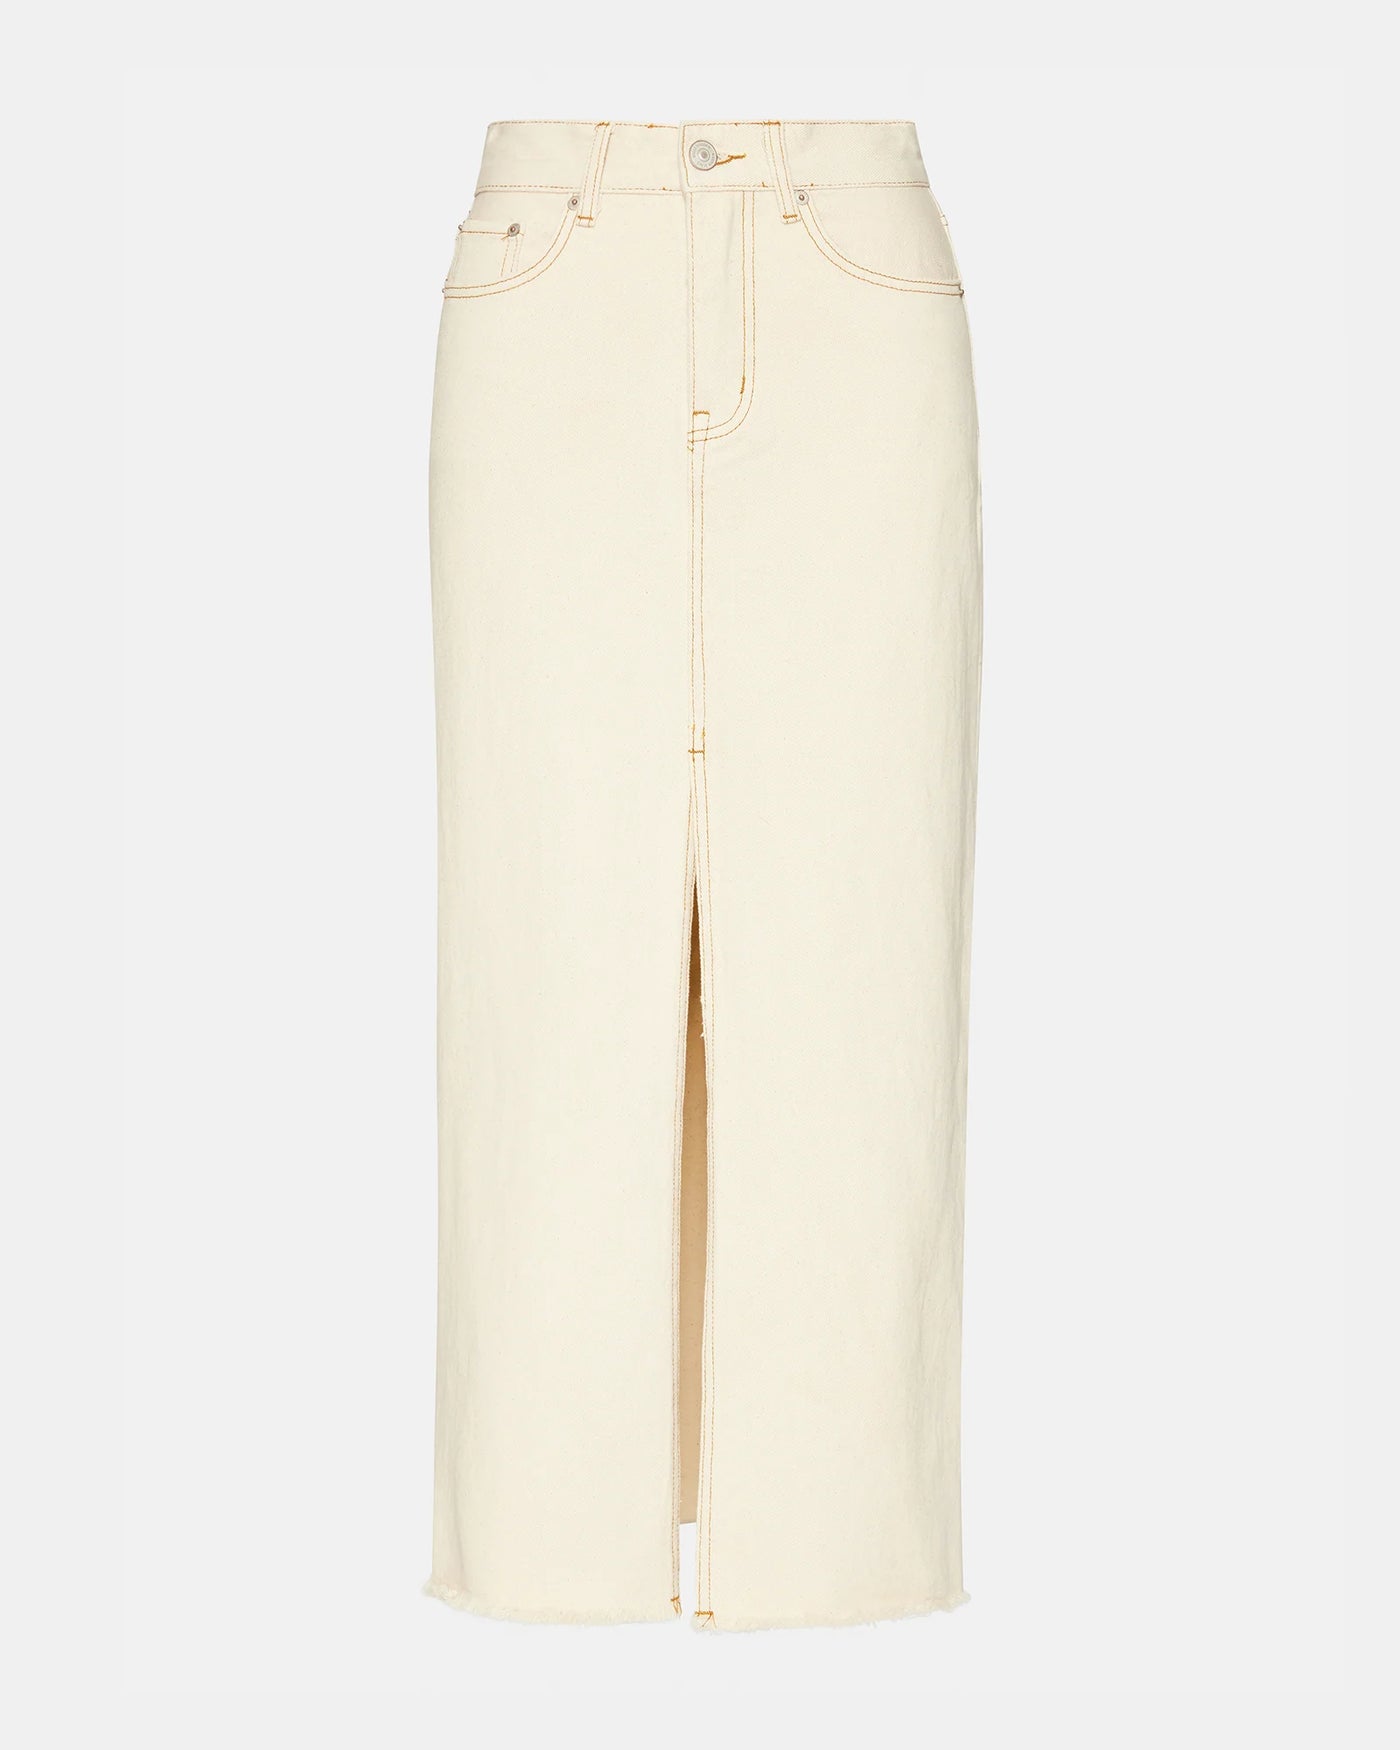 Avani Denim Skirt in Ivory